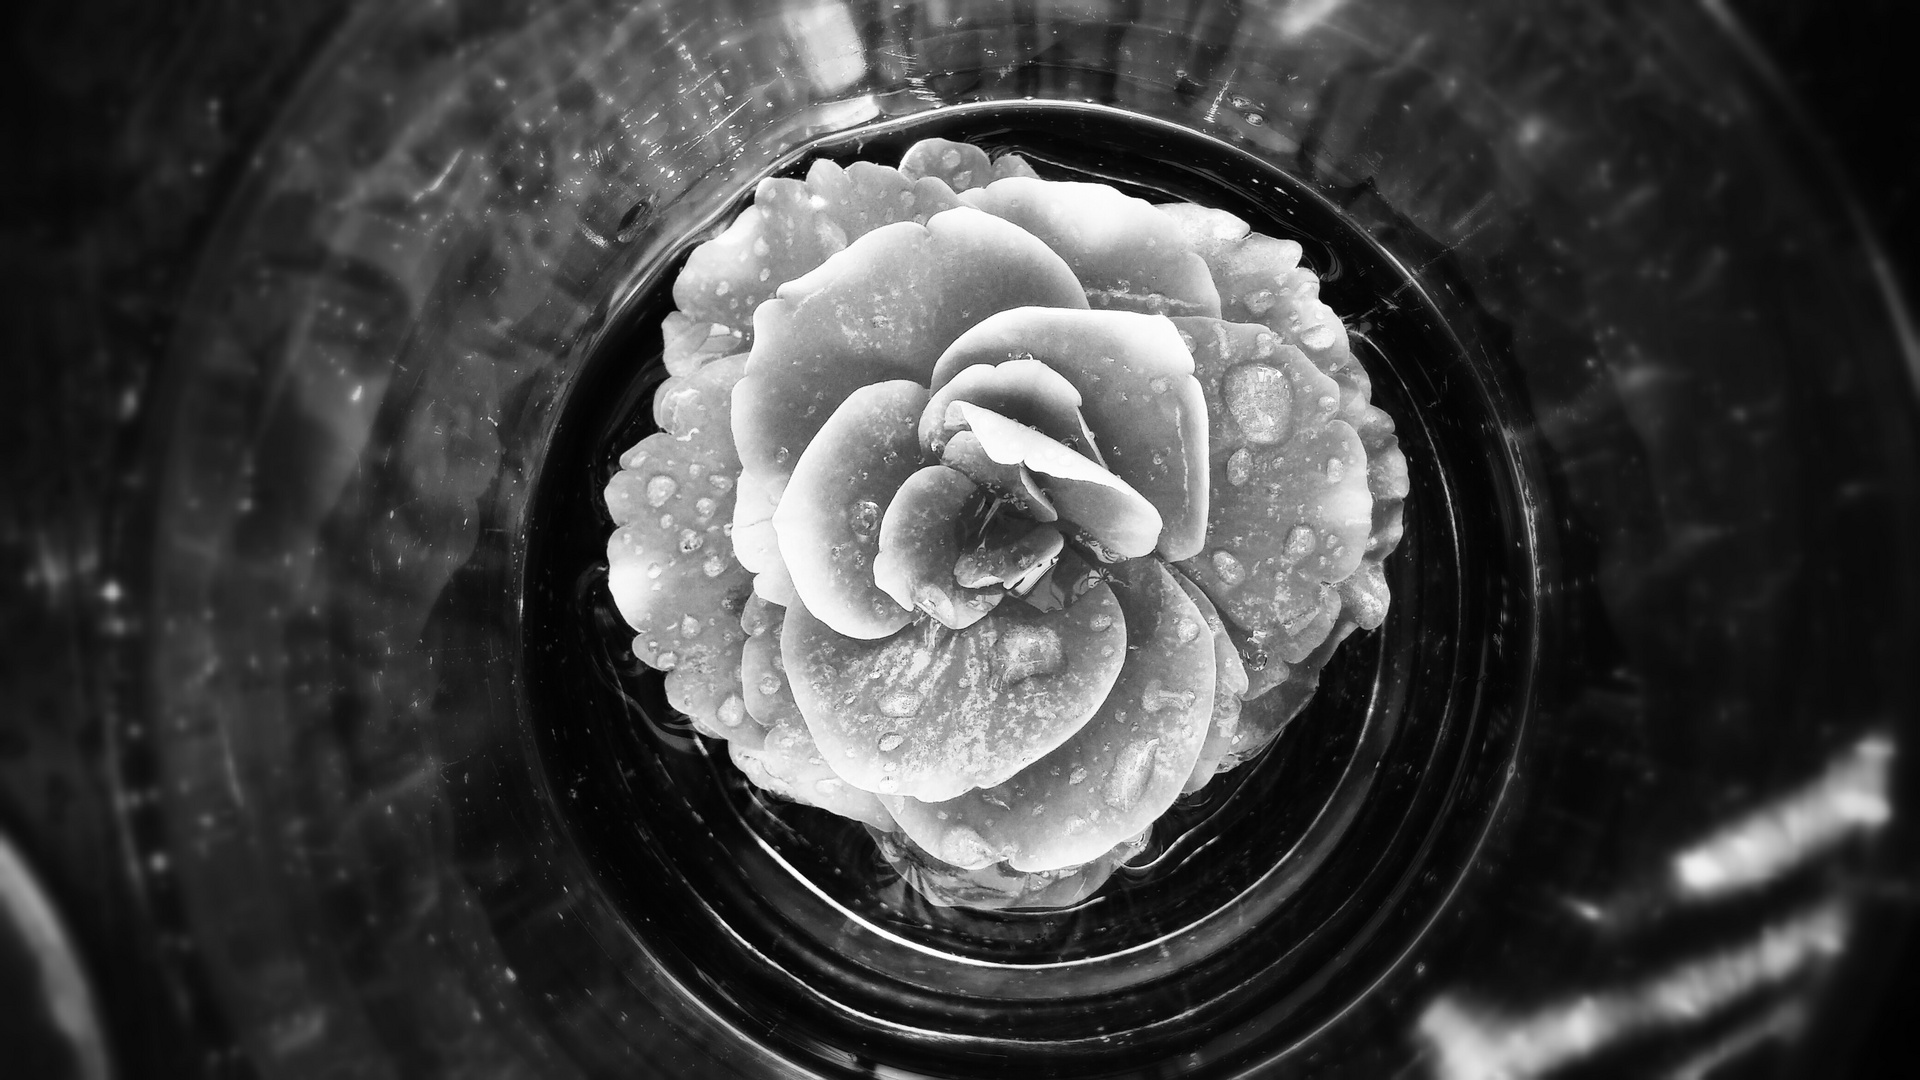 Blume im Glas